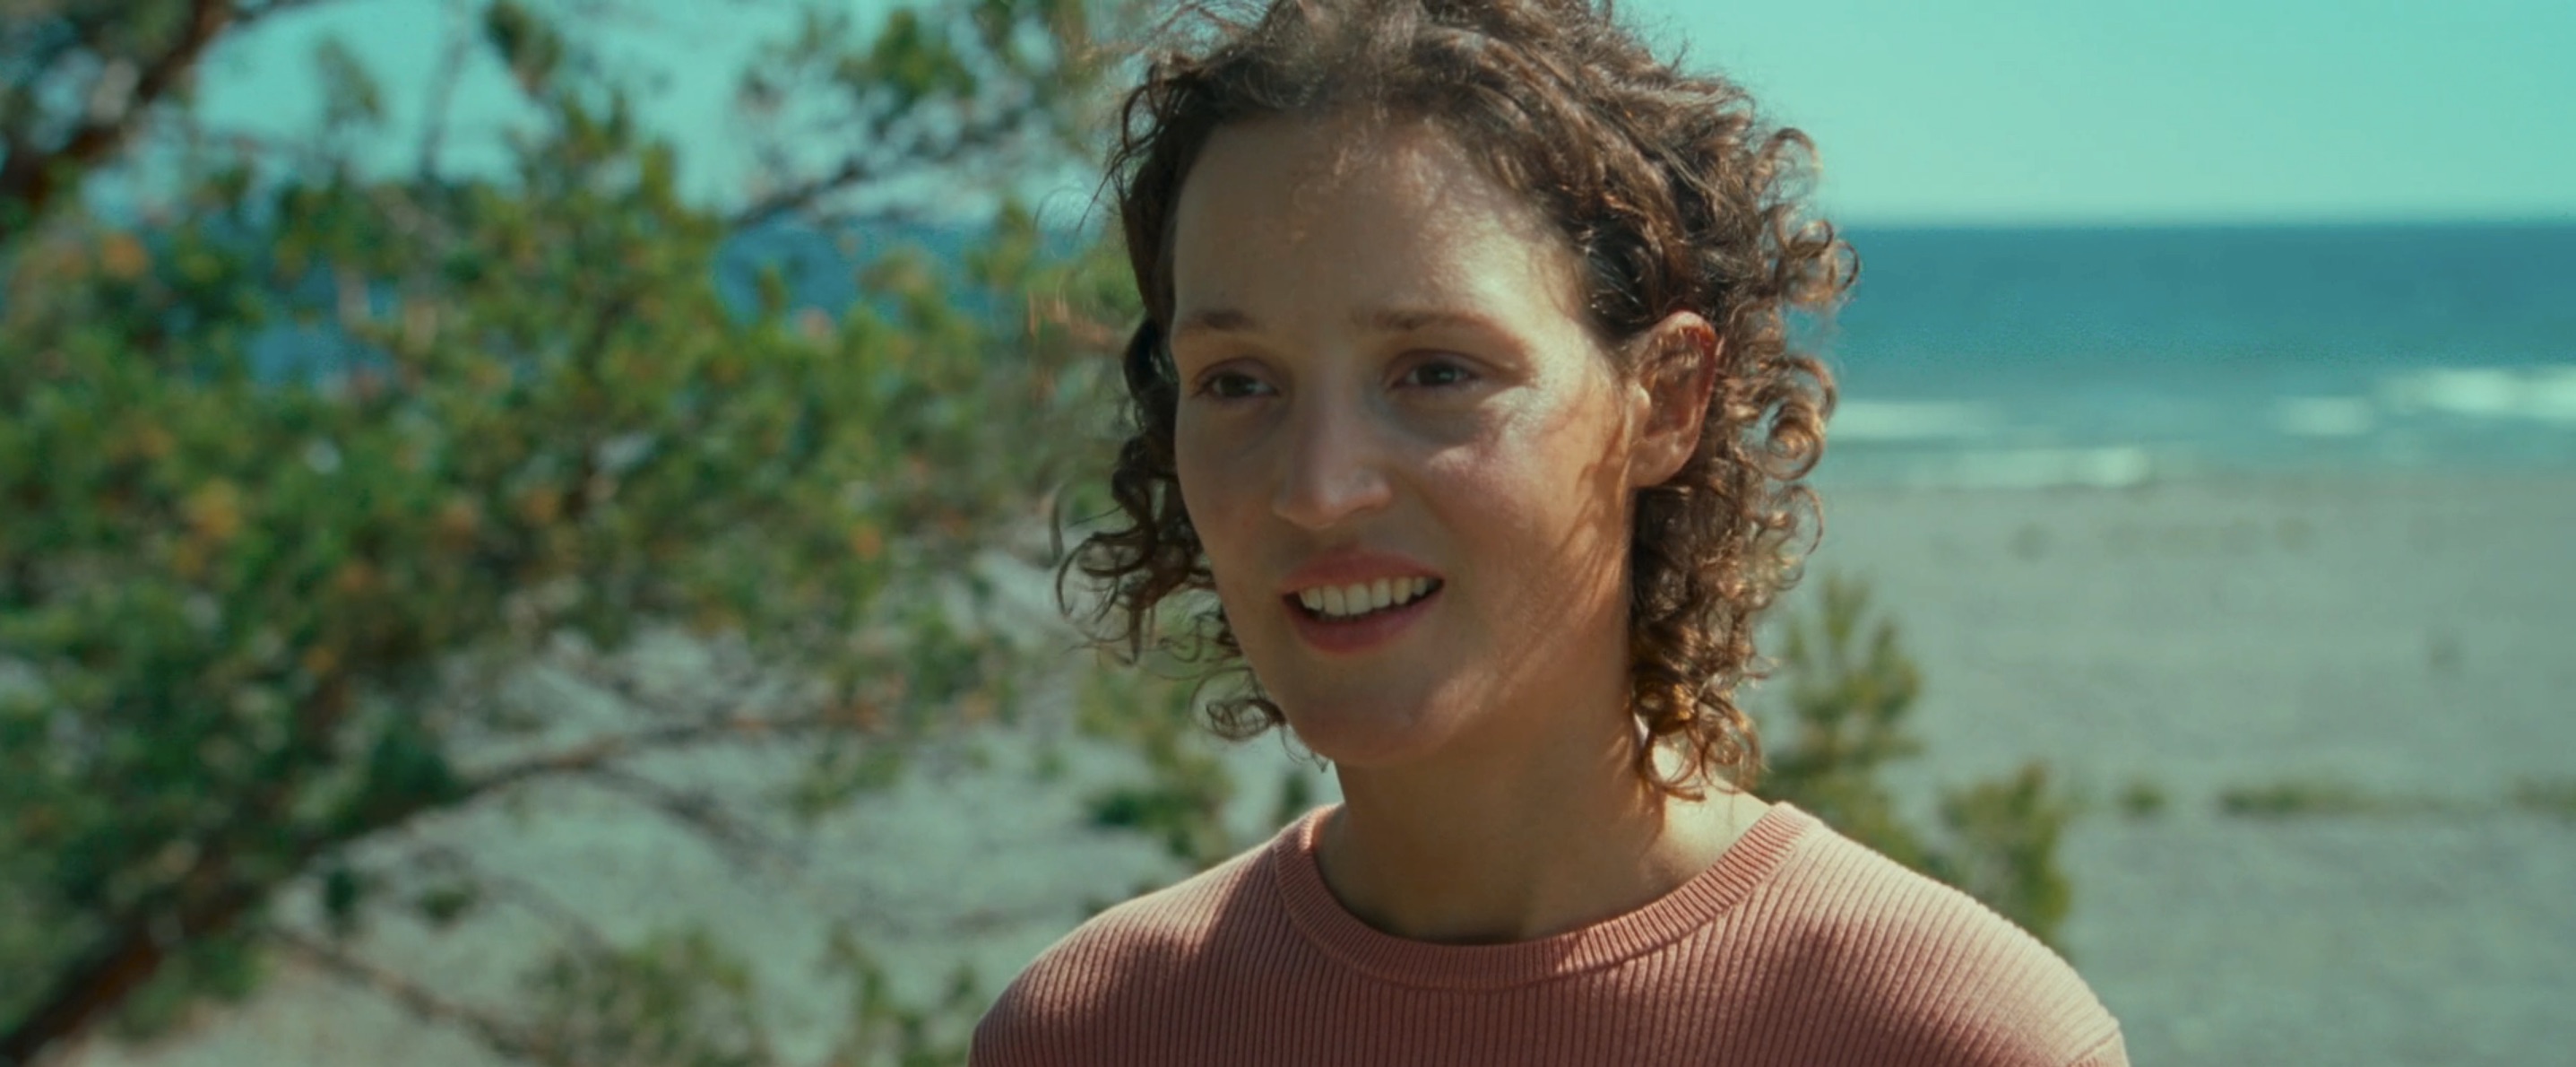 Bergman Island Cast - Vicky Krieps as Chris Sanders